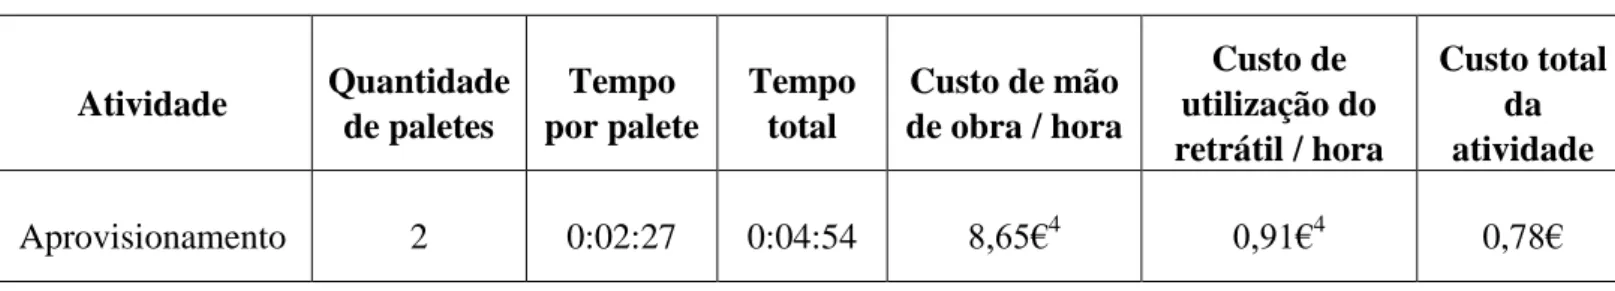 Tabela 3 - Exemplo de imputação de custos a um objeto de custo - neste caso duas paletes  da referência 2111271  Atividade  Quantidade  de paletes  Tempo  por palete  Tempo total  Custo de mão  de obra / hora  Custo de  utilização do  retrátil / hora  Cust